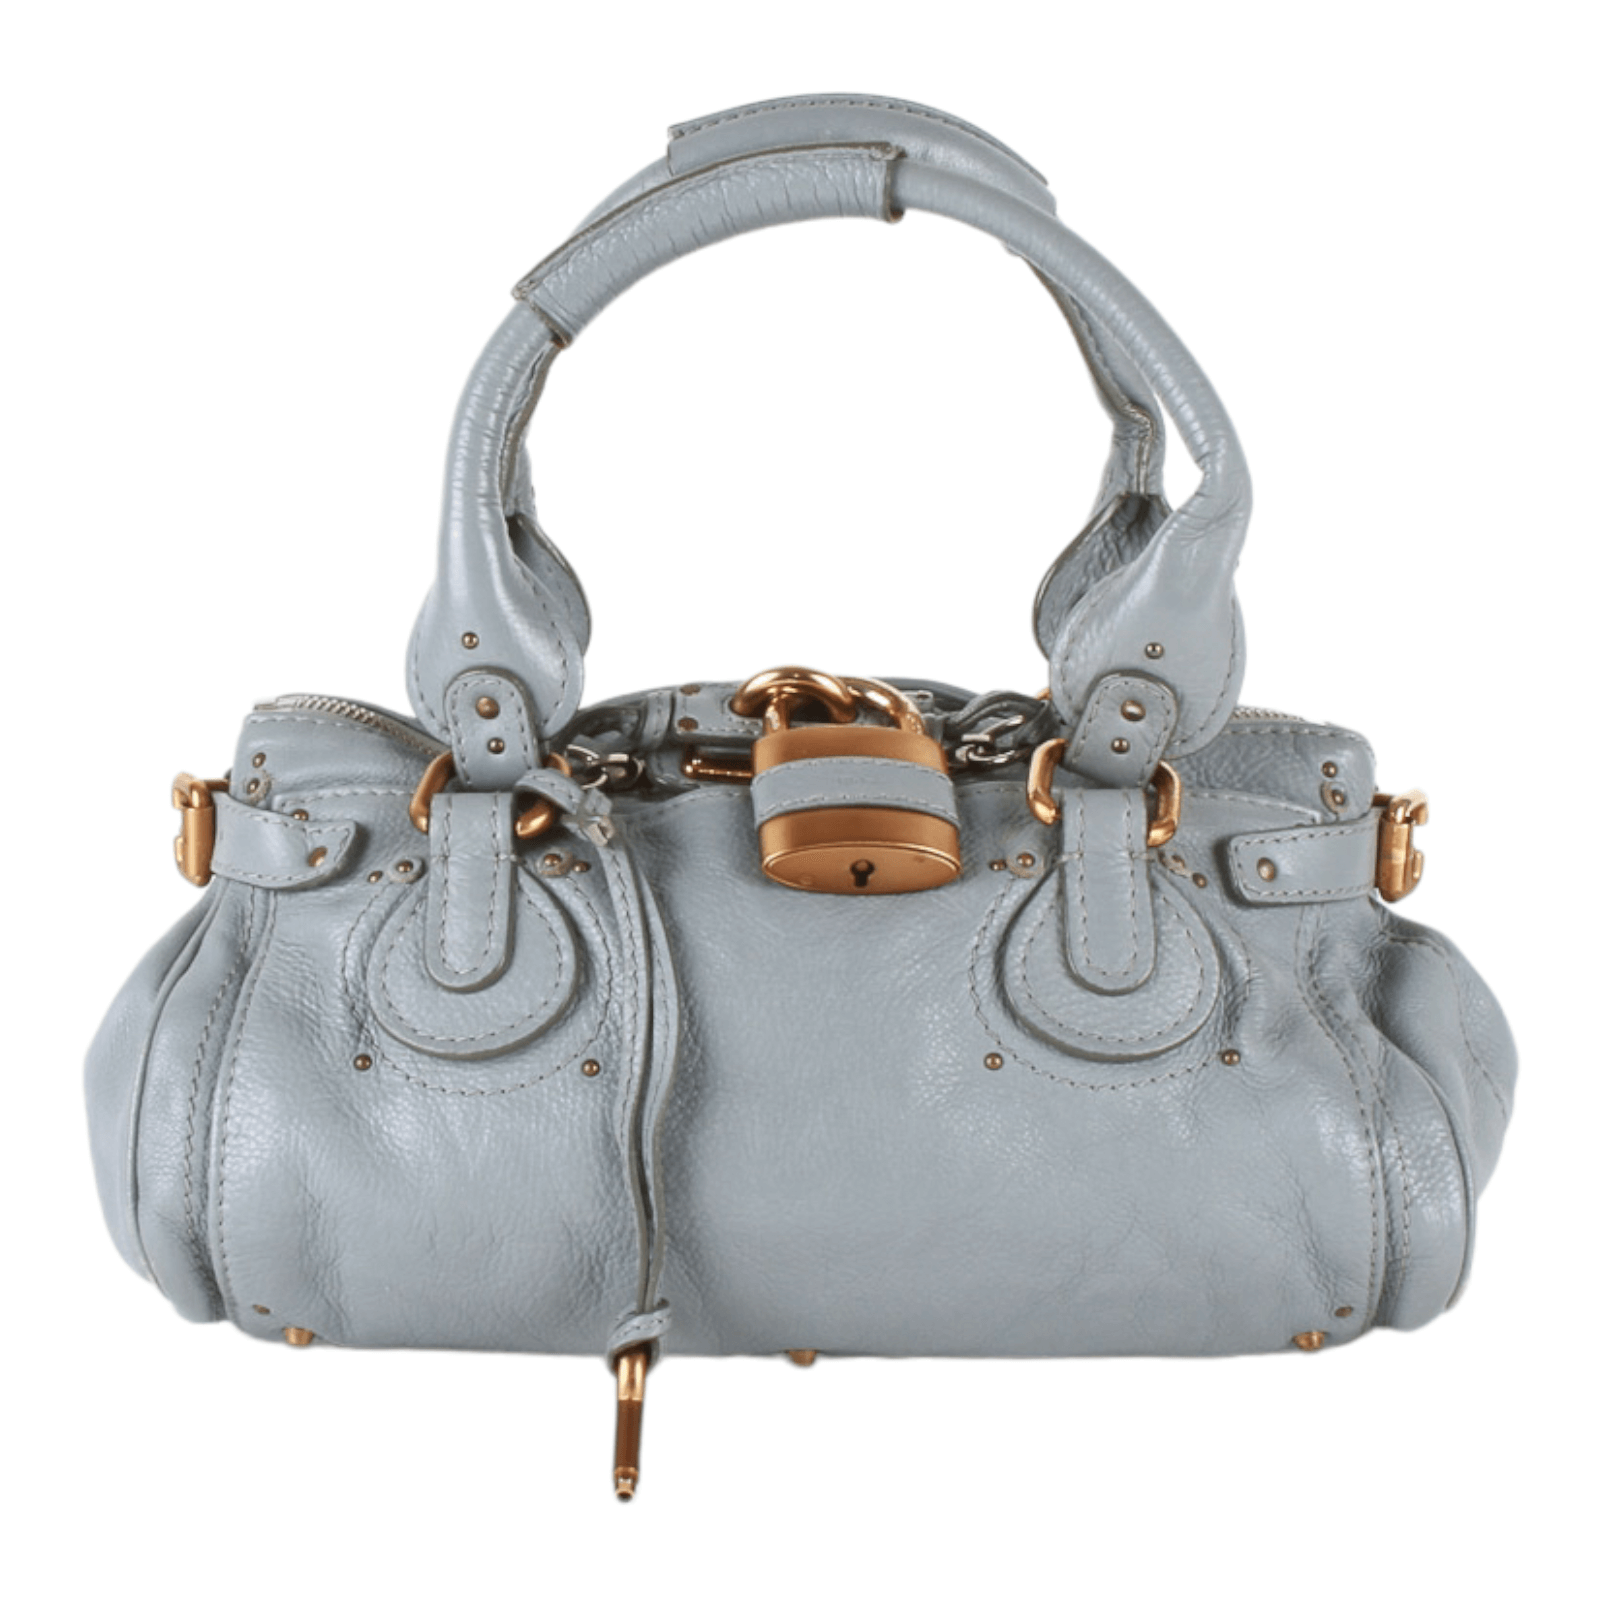 Authentic Chloe light blue leather Paddington Satchel Shoulder/Hand bag